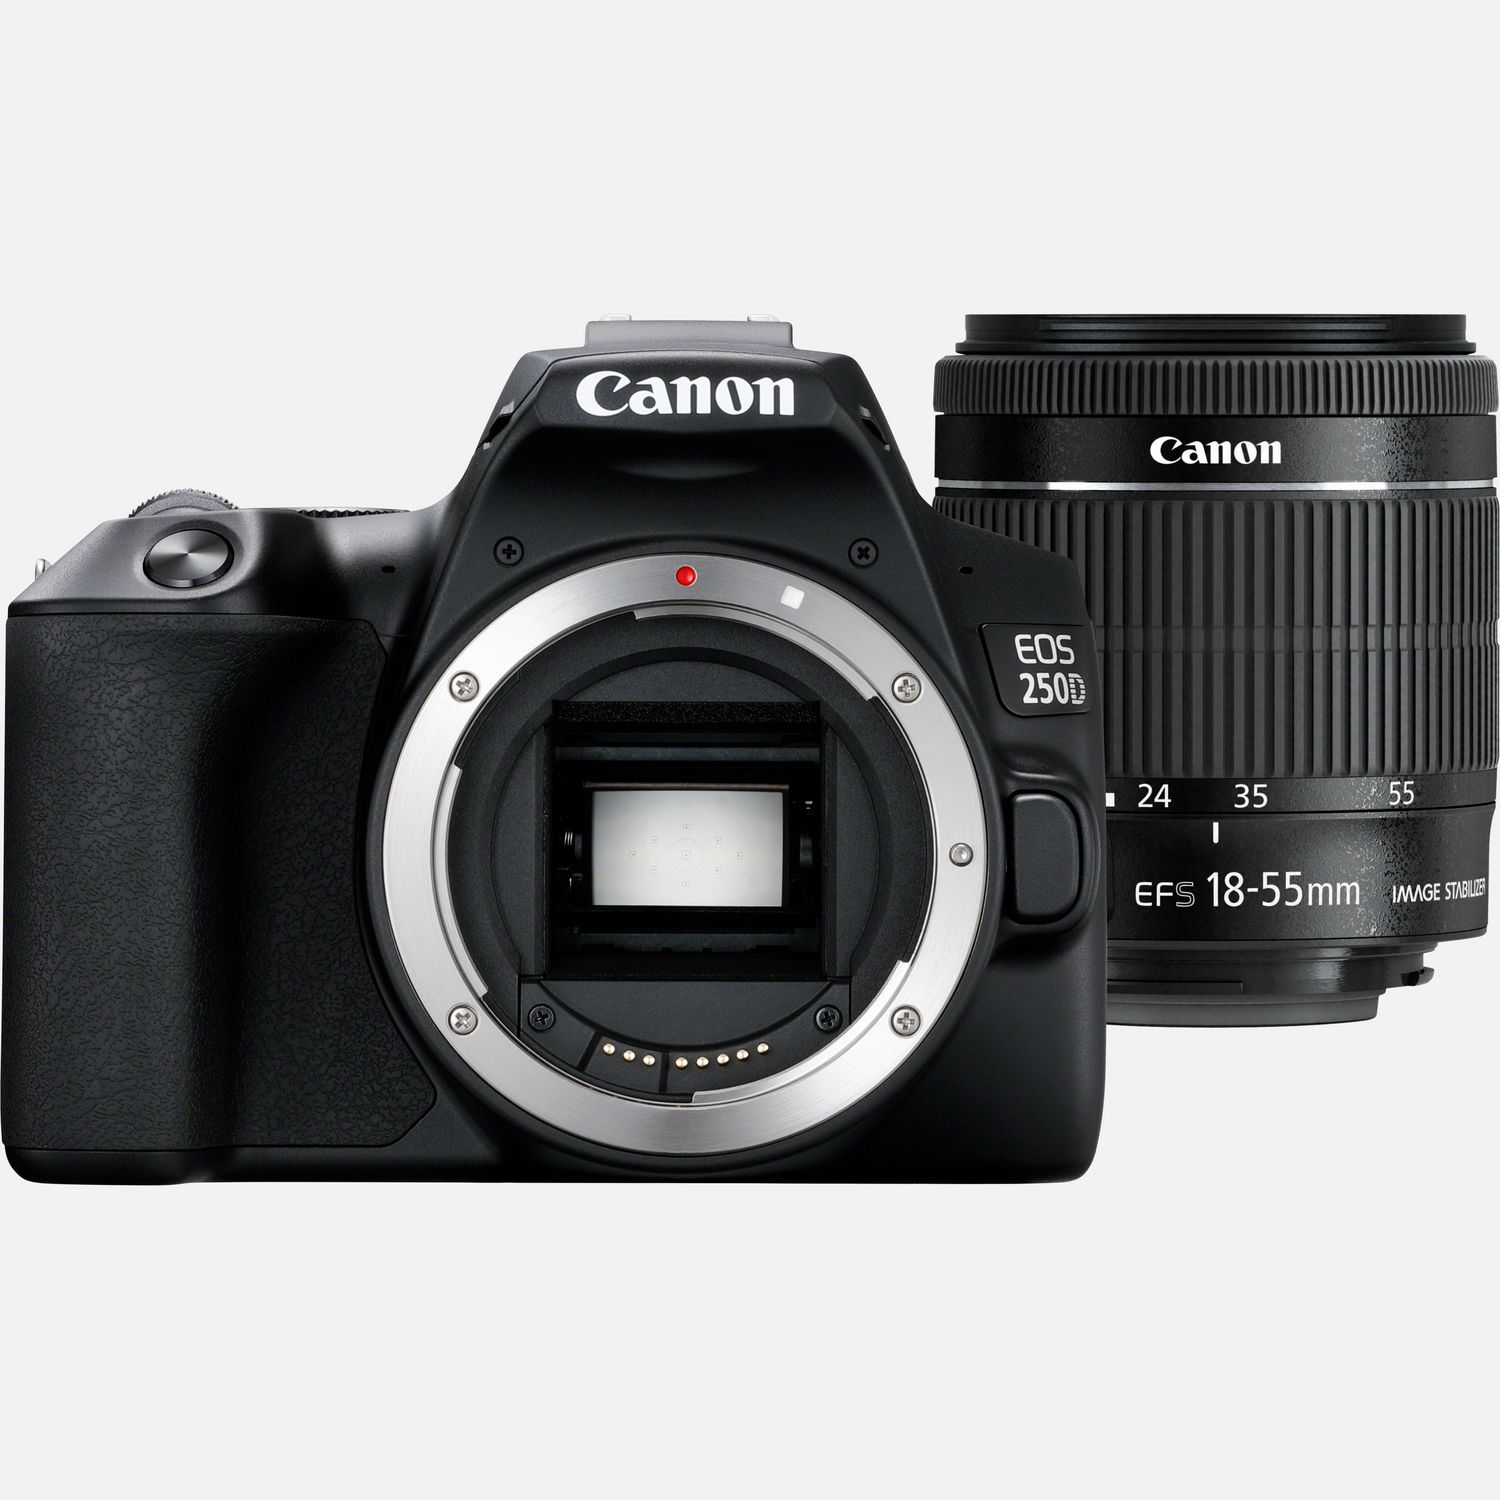 Canon EOS 250D DSLR Camera + 4 Lens Kit 18-55mm + 75-300mm + 16GB Top Value  Kit